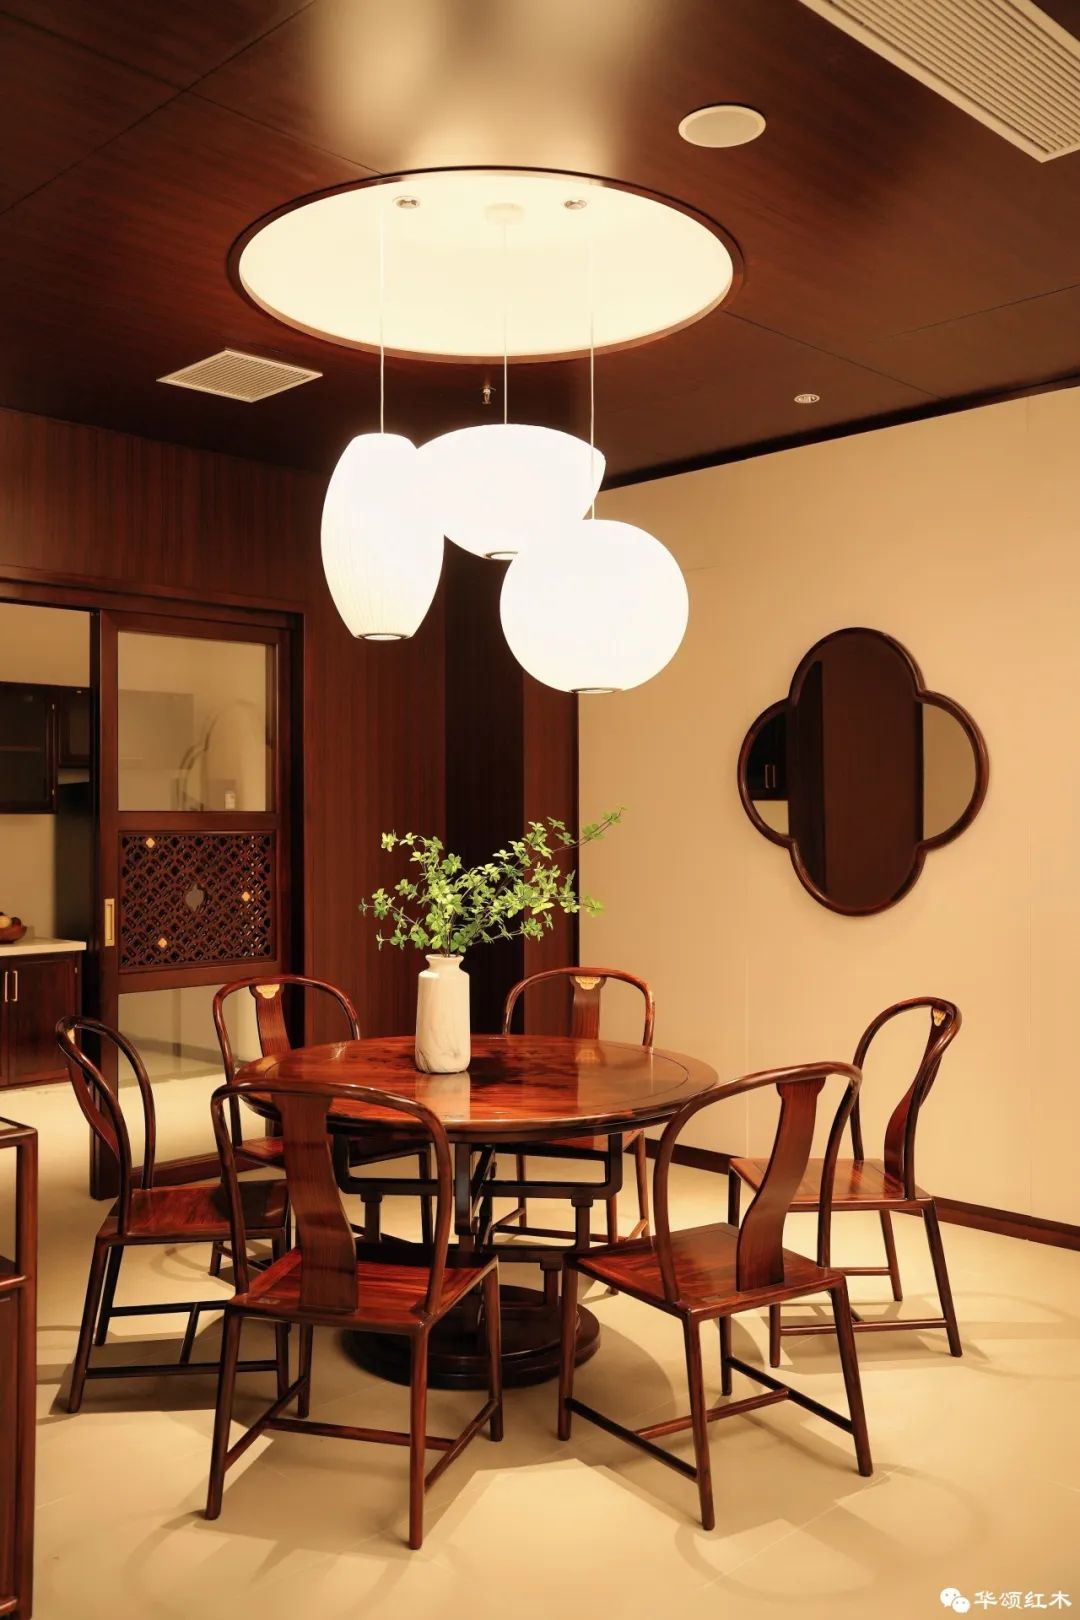 檀·逸弘圆桌系列散发着东方韵味具有大家风范设计灵感源于盛放的海棠